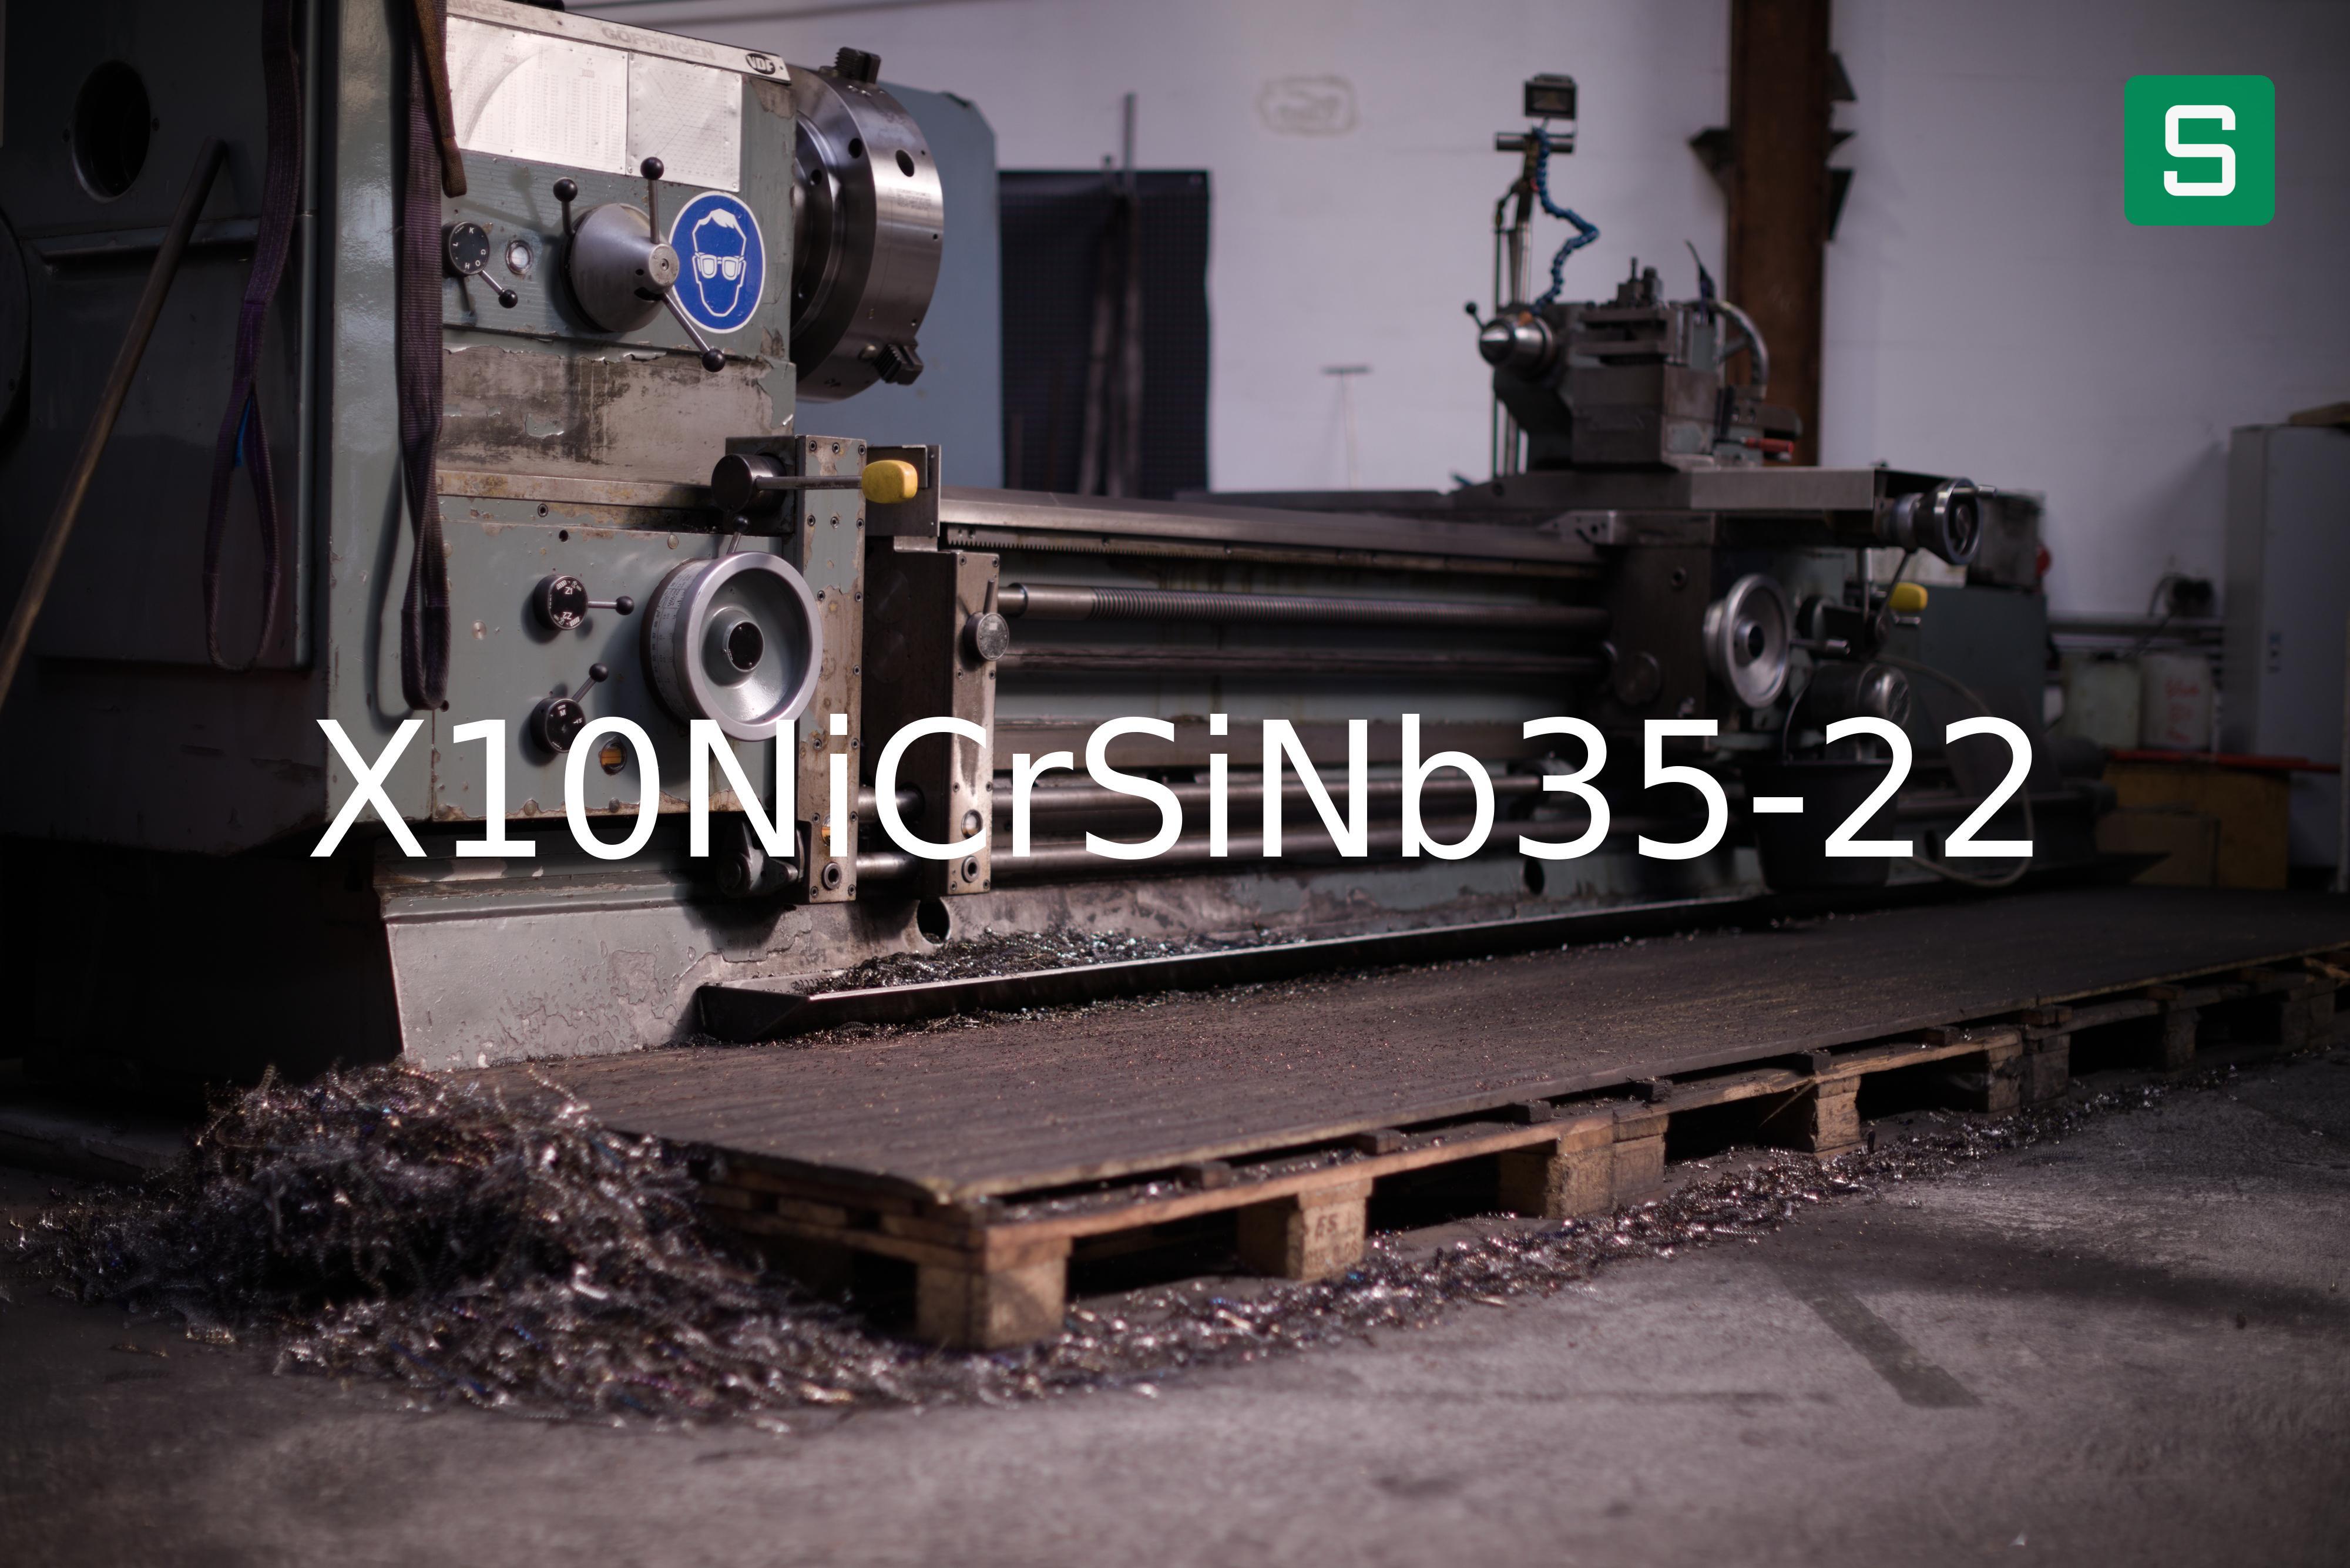 Steel Material: X10NiCrSiNb35-22